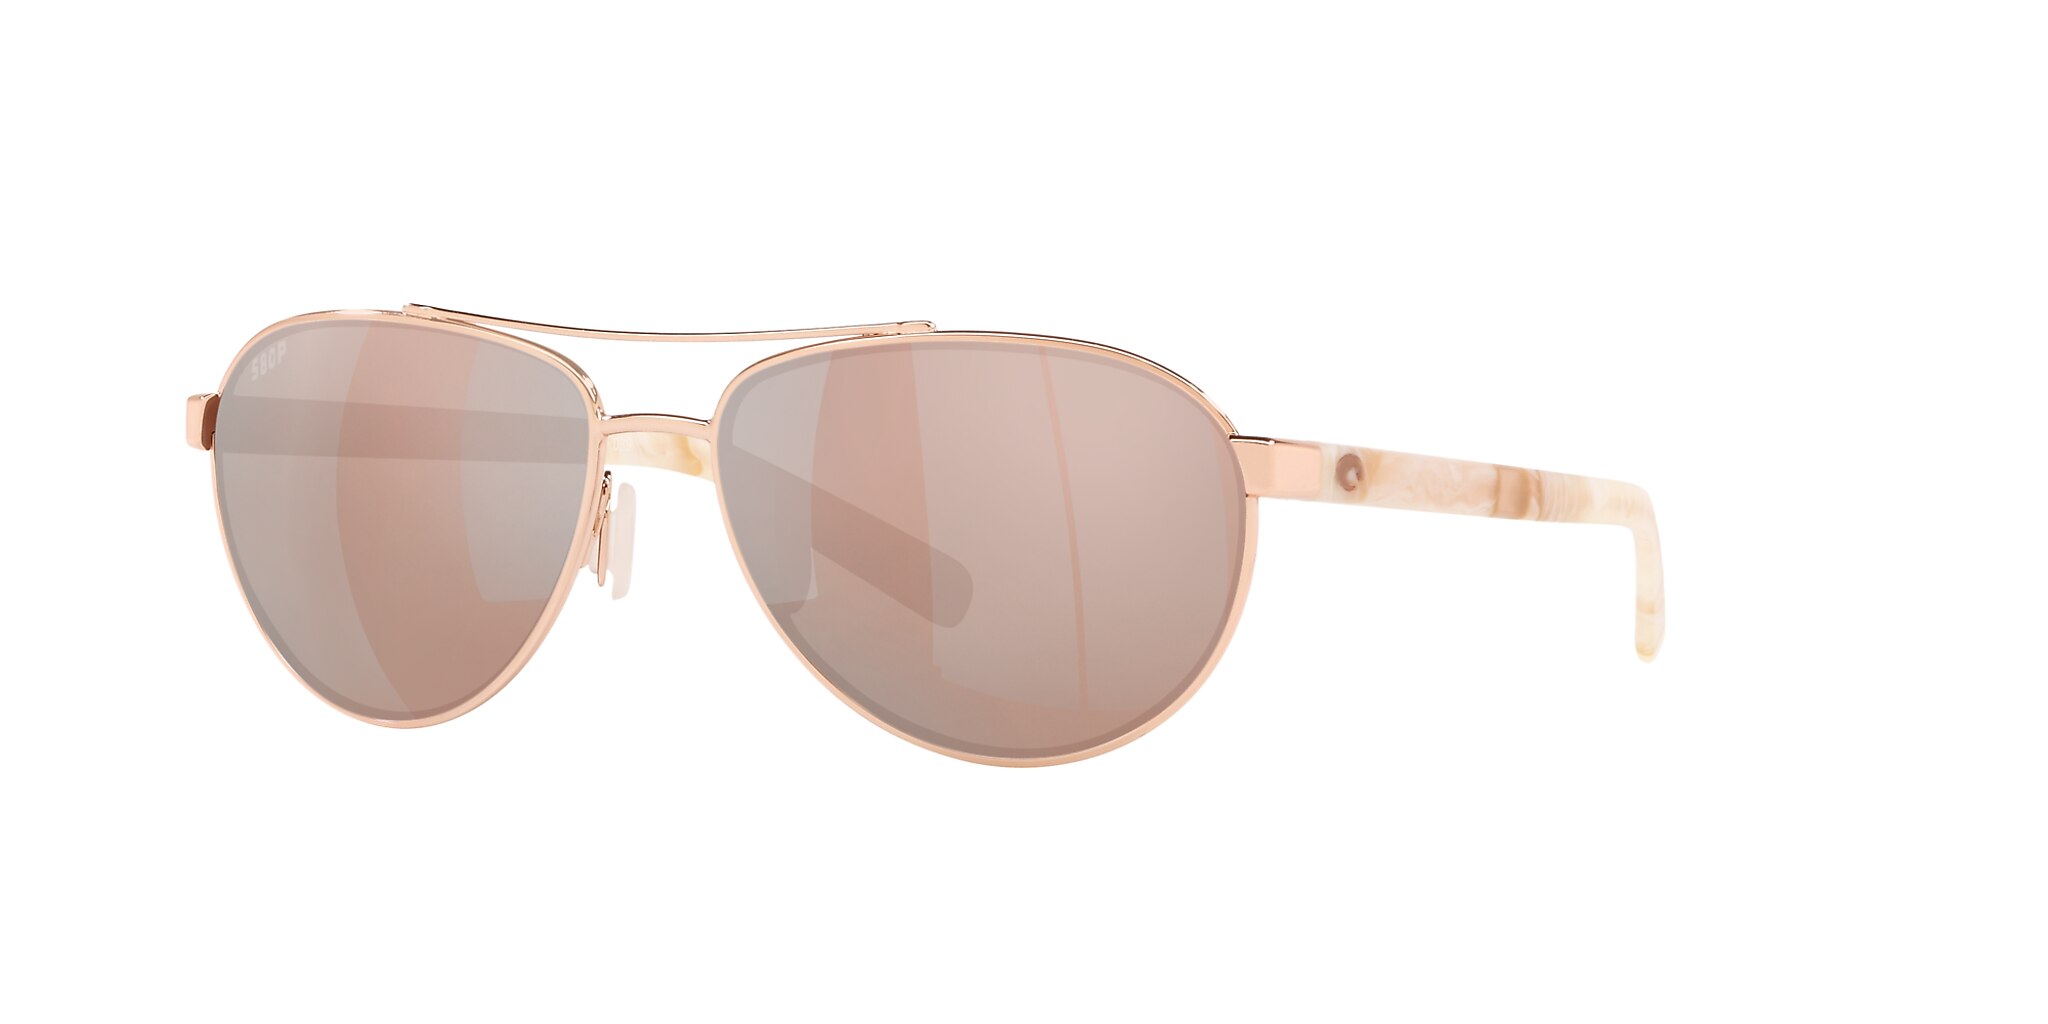 Fernandina Polarized Sunglasses in Copper Silver Mirror | Costa